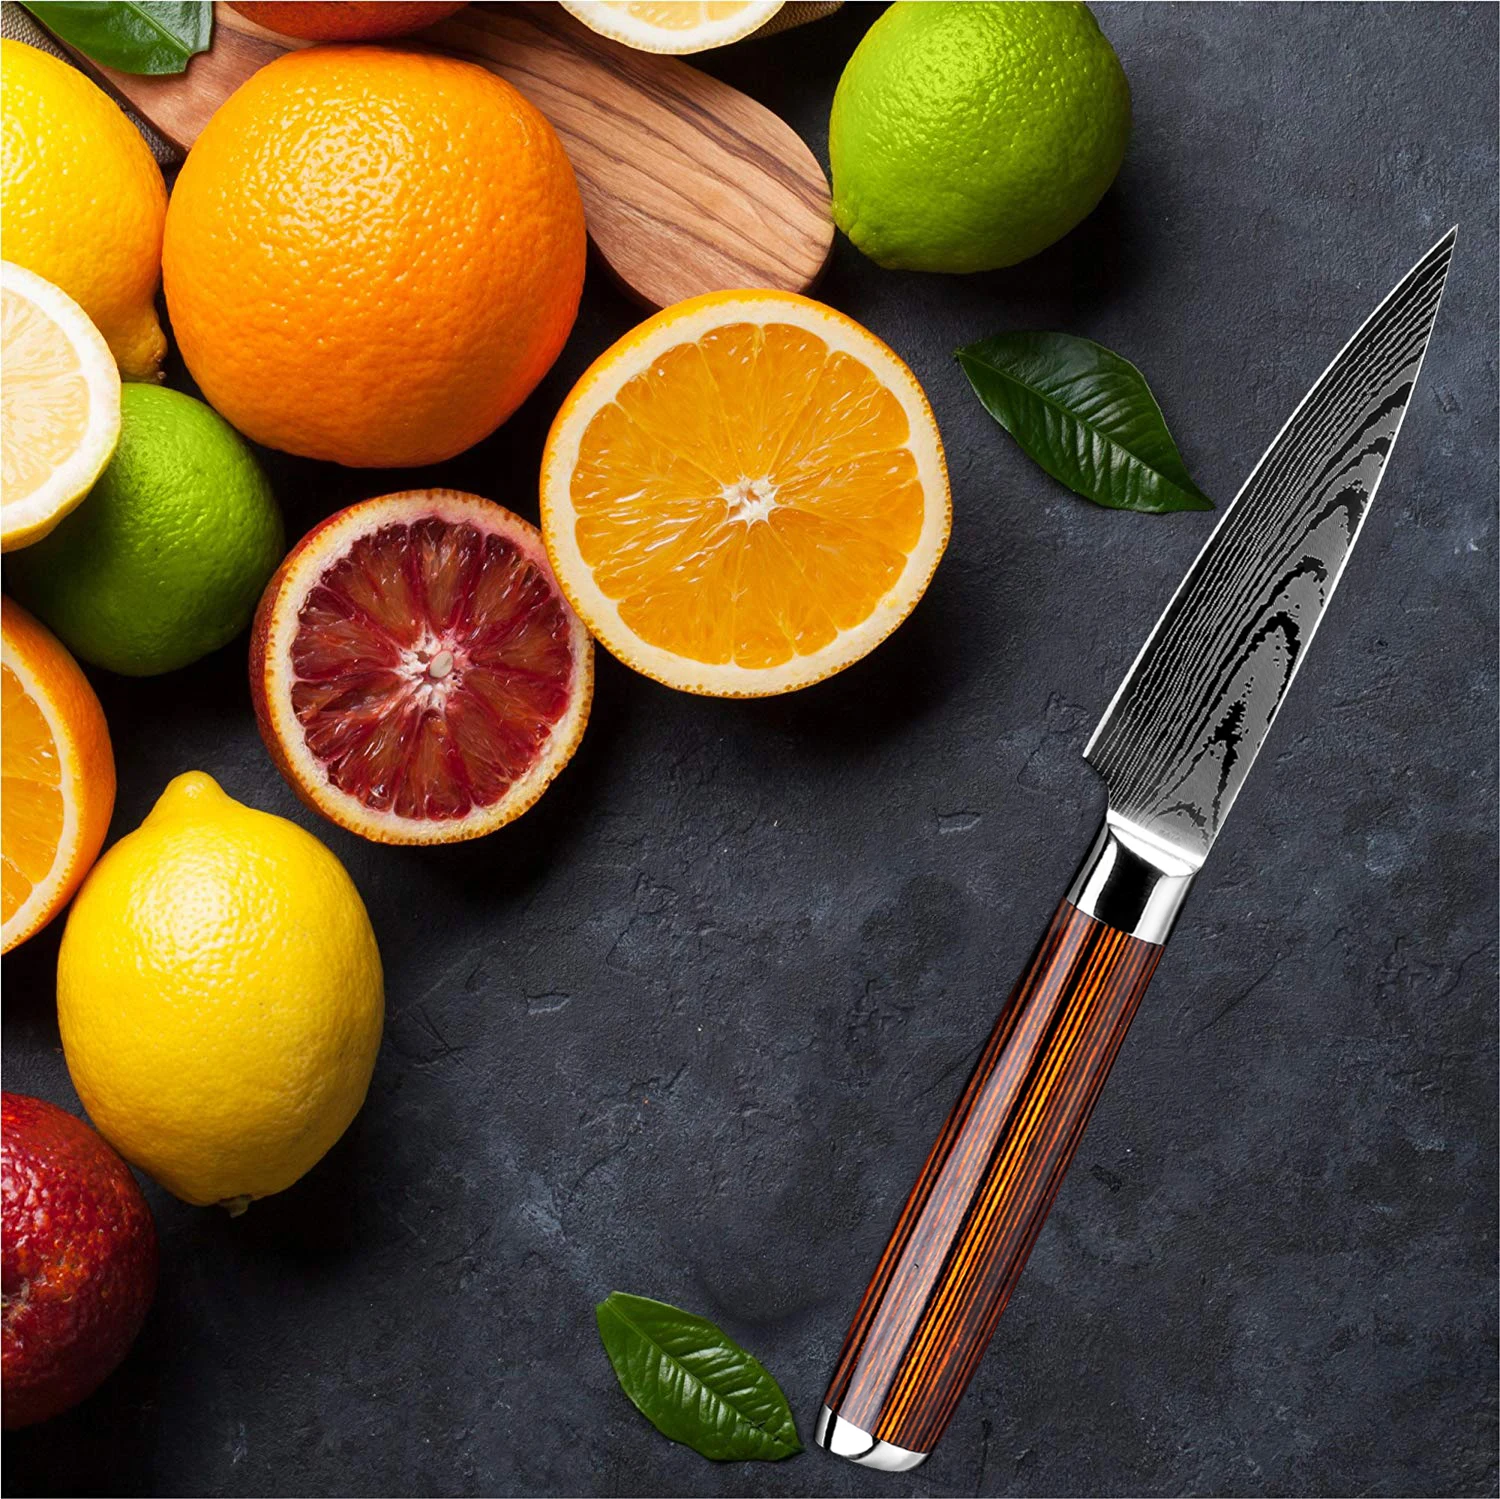 XITUO профессиональный нож шеф-повара 4 шт. Gyuto Nakiri Кливер нож японский Santoku замороженный нож зубчатый резак нарезки филе стейк